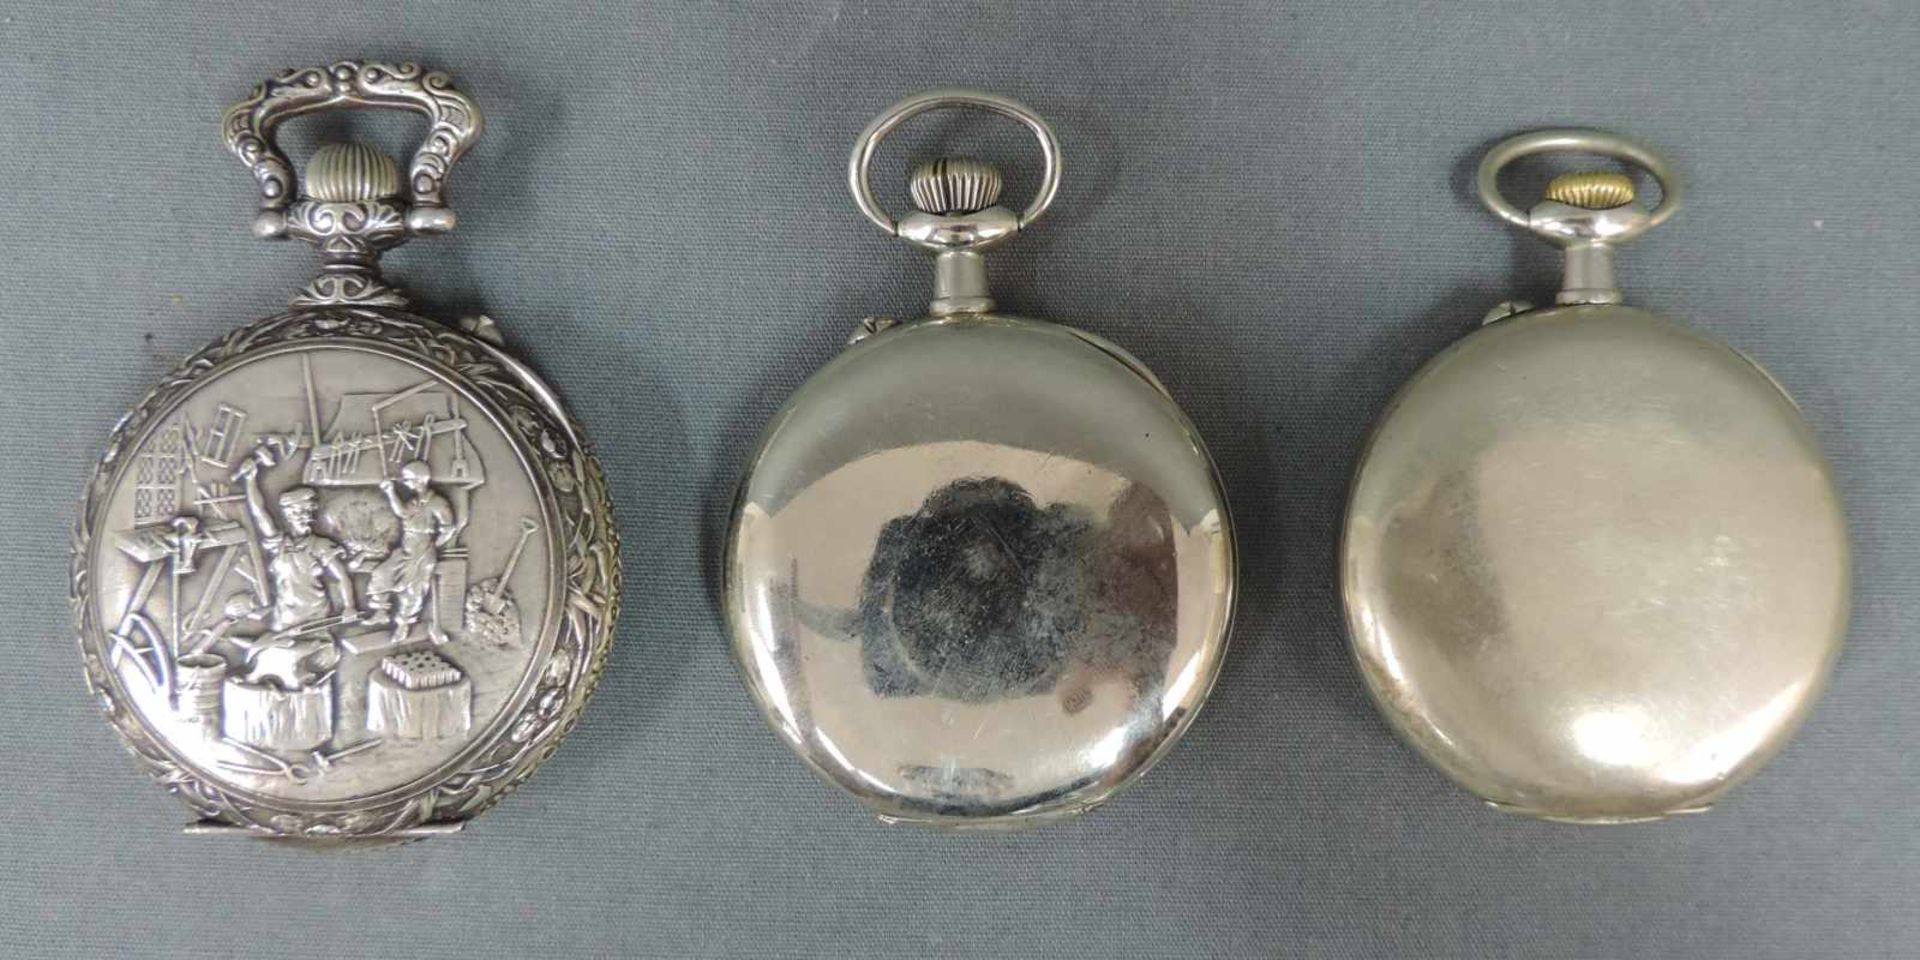 Drei Taschenuhren. Wohl 19. Jahrhundert 3 Pocket watches. - Bild 3 aus 5